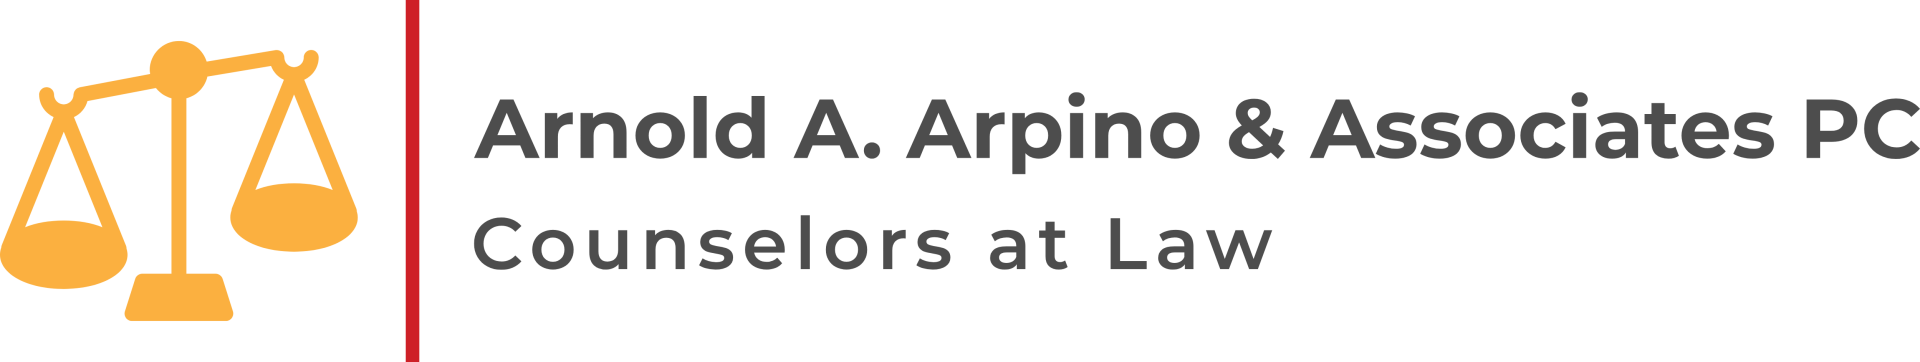 Arnold A. Arpino & Associates PC Logo